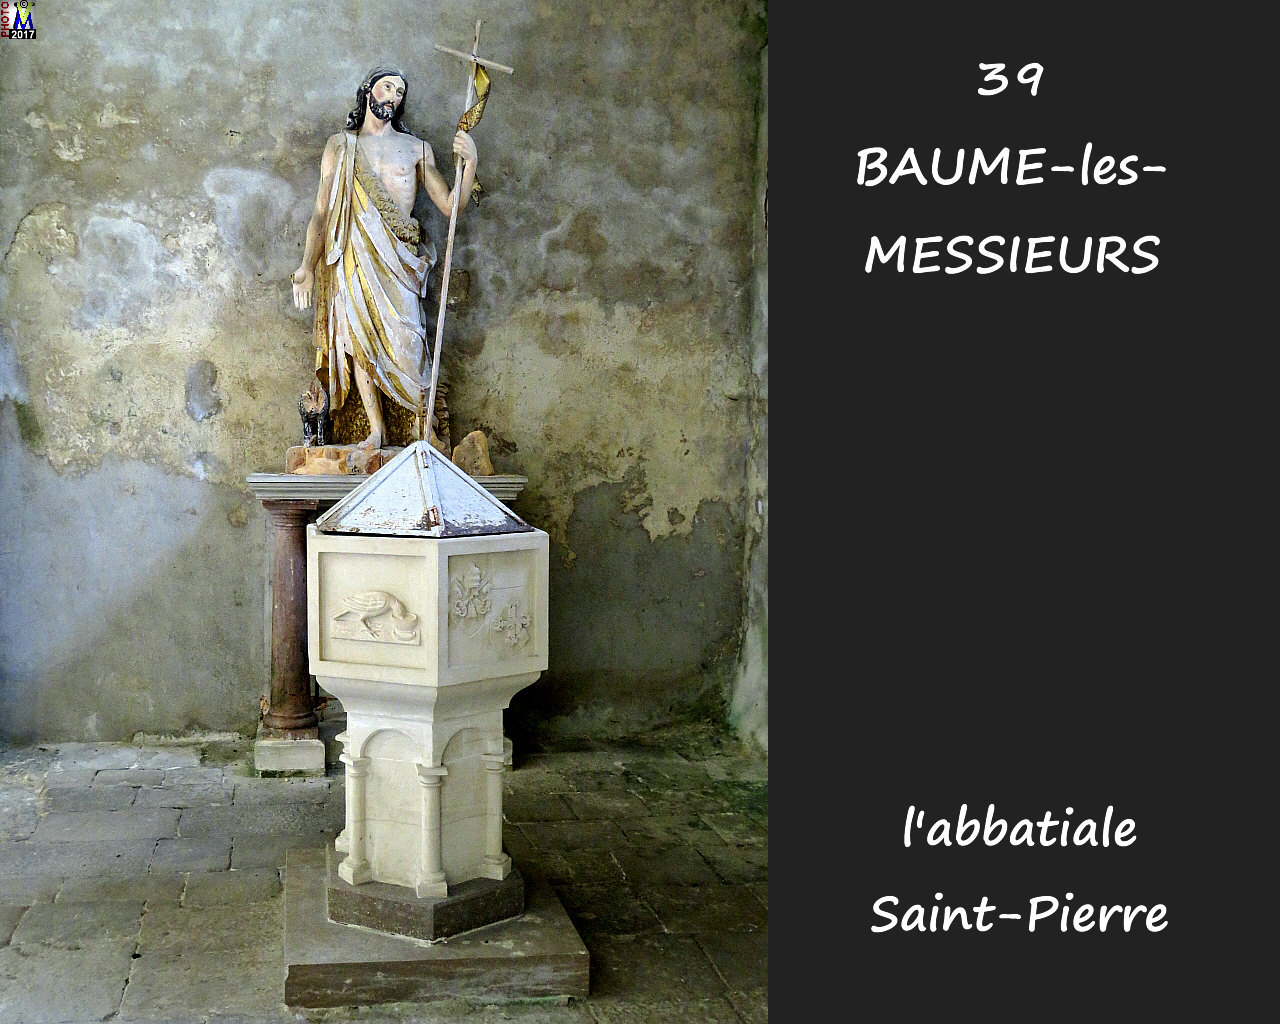 39BAUME-LES-MESSIEURS_abbatiale_278.jpg